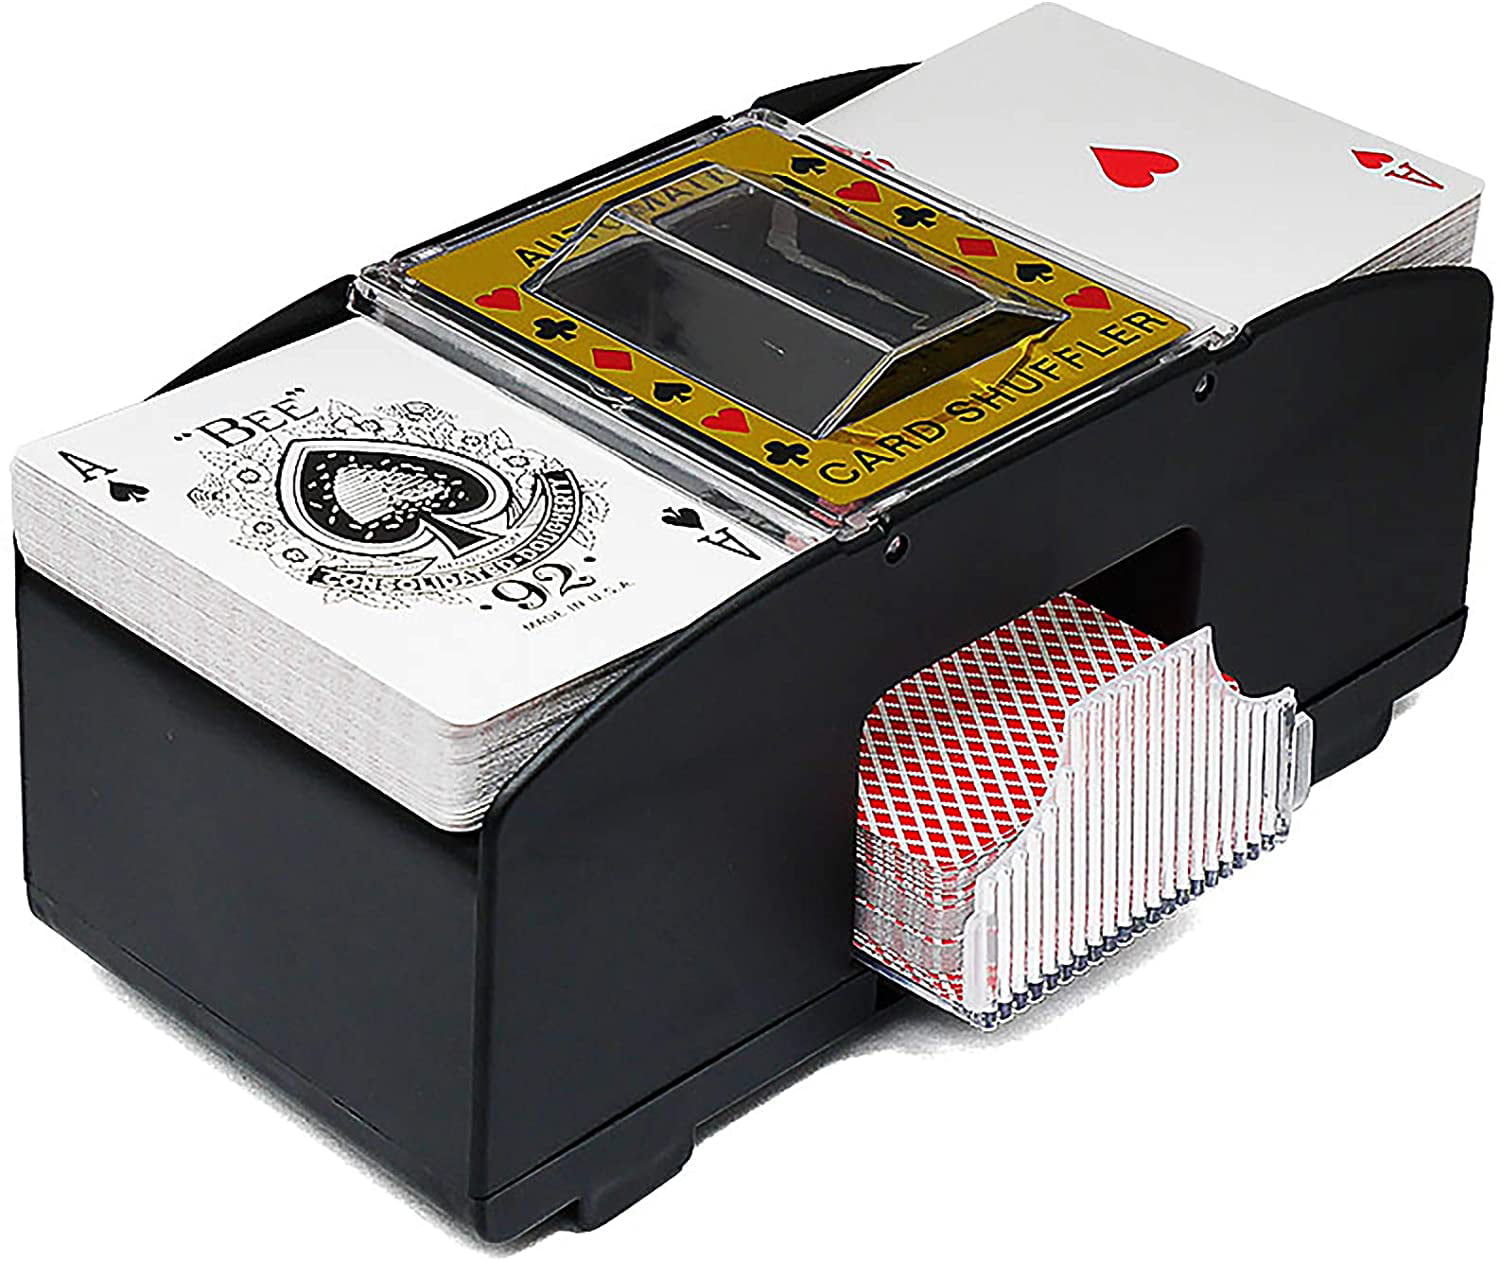 Card Shuffler Shuffler Machine Automatic Shuffler Battery Powered Portable for Casino for Home